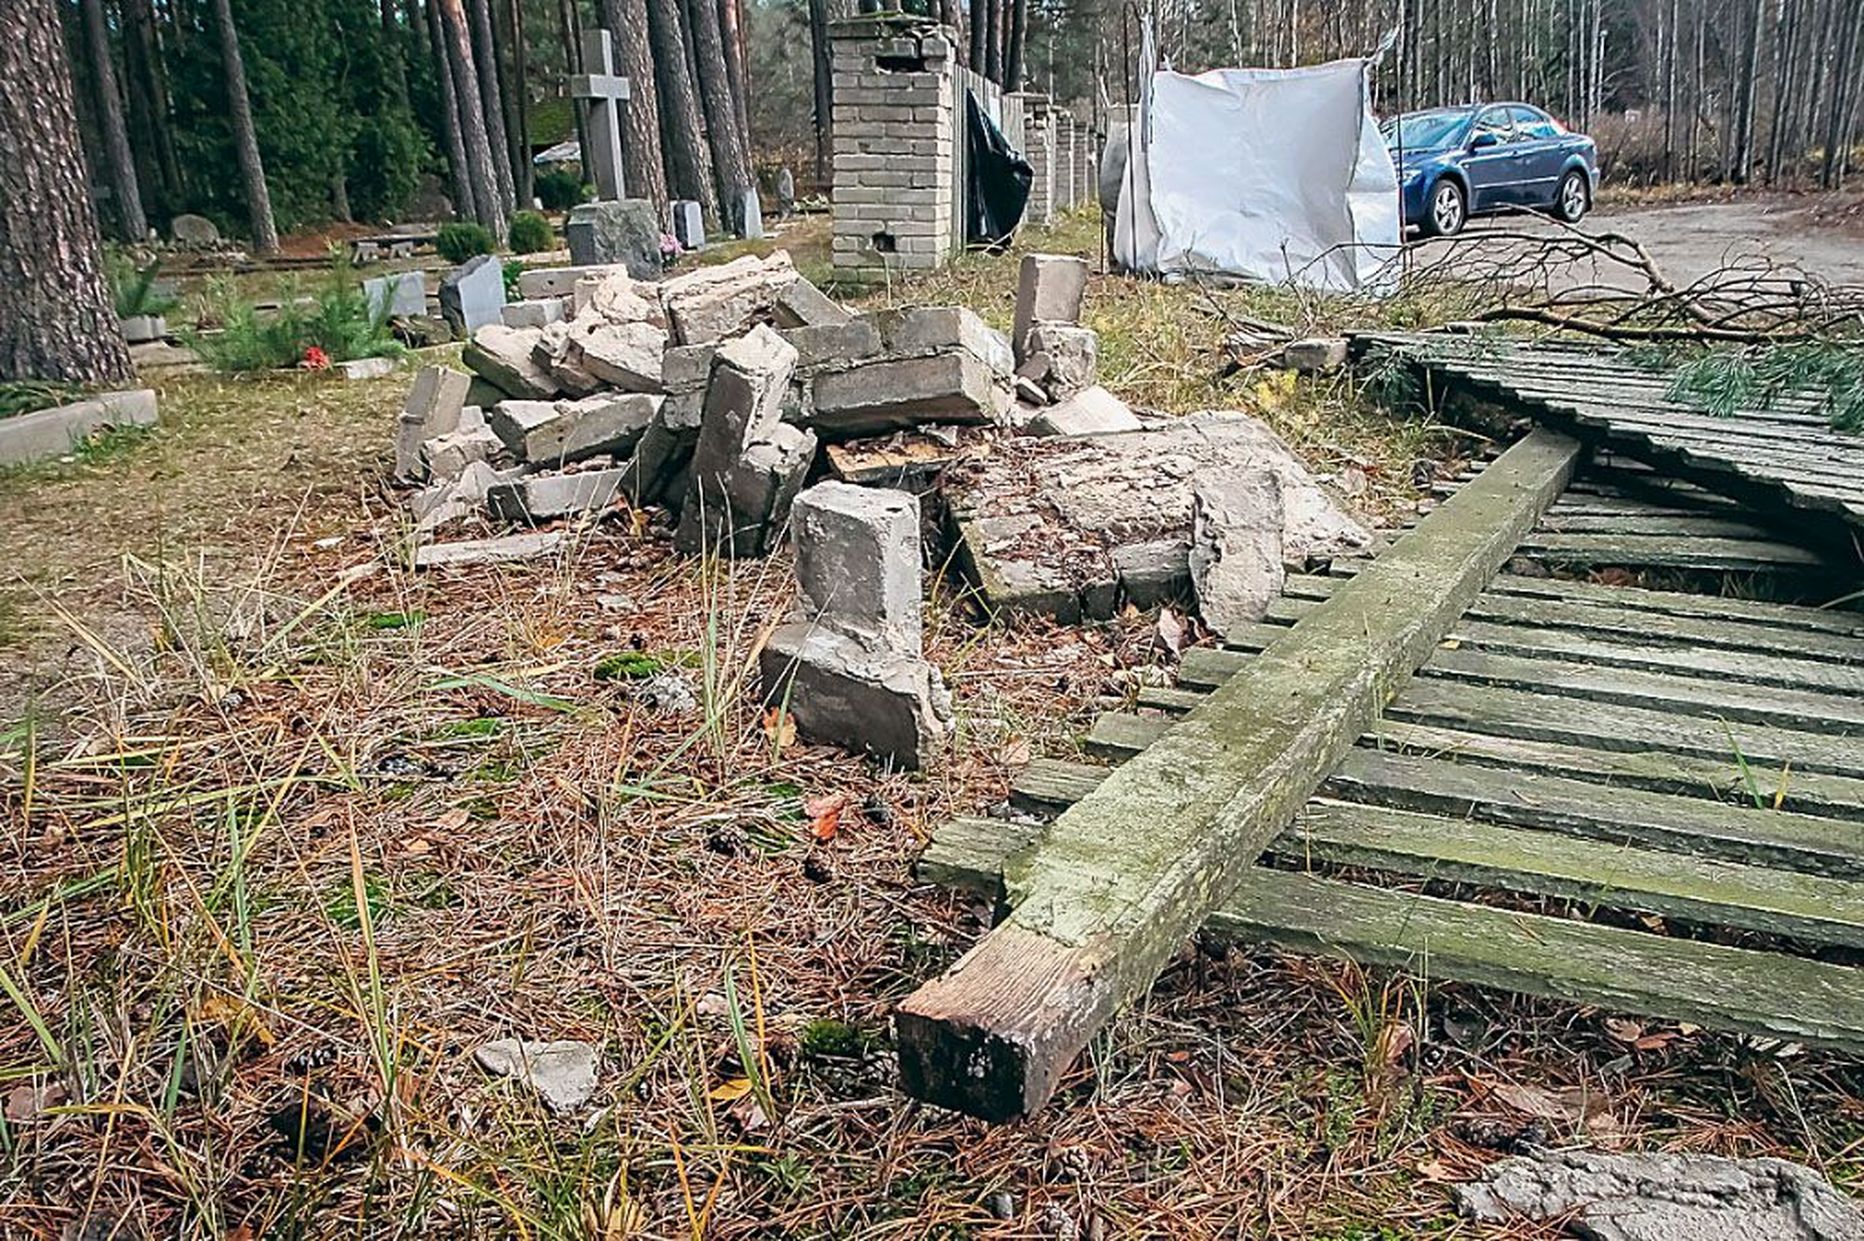 Kalmistut hooldava Pärnu Haldusteenused OÜ infotelefonil ei osatud öelda, kas ja millal lagunev aed korda tehakse või välja vahetatakse.